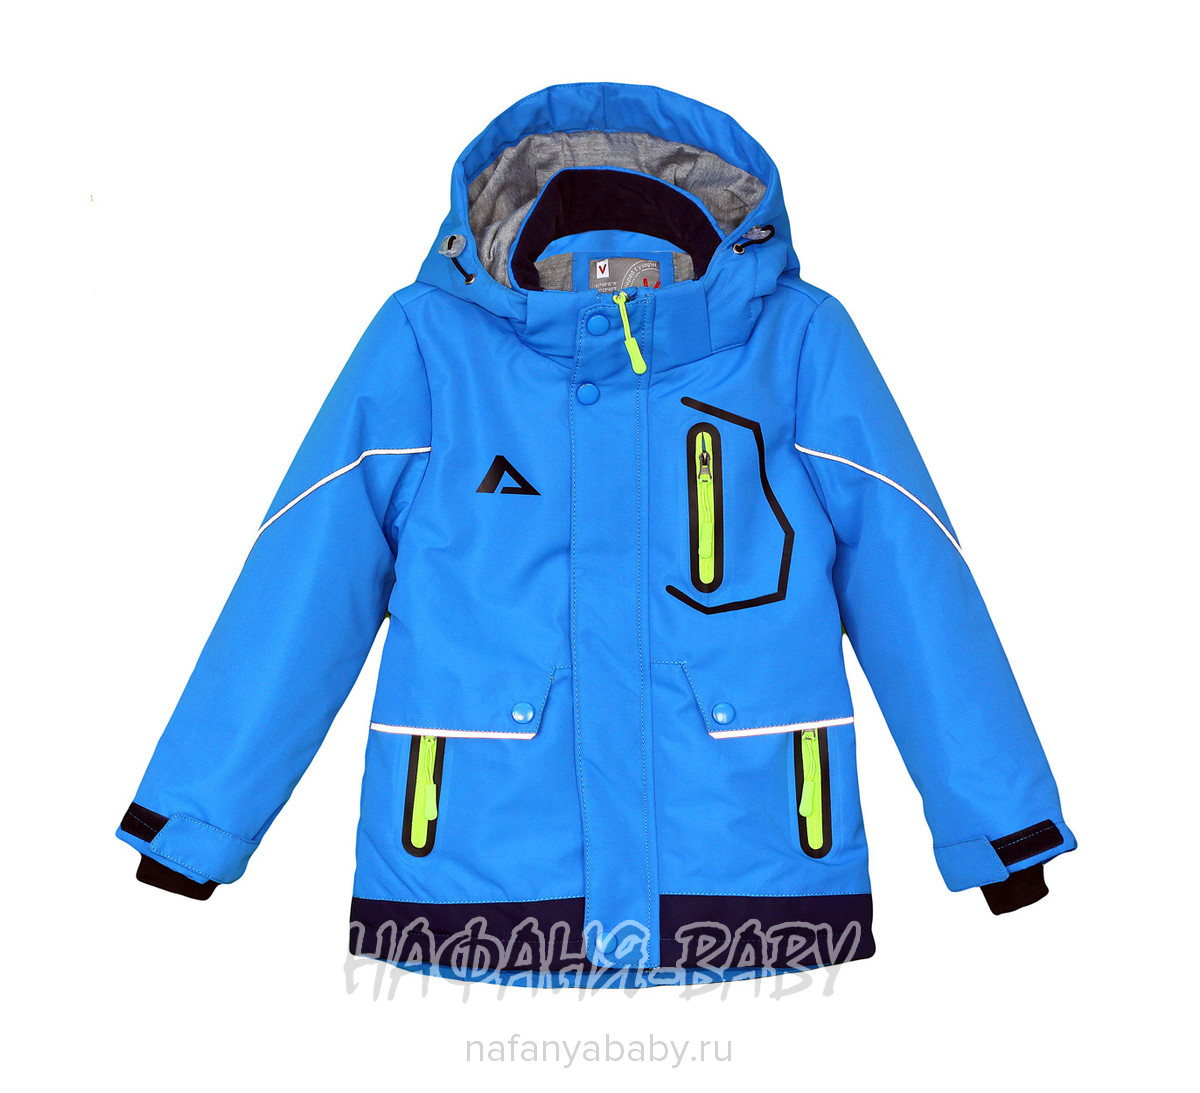 Детская демисезонная куртка VOGTOF арт: 8115, 1-4 года, оптом Китай (Пекин)